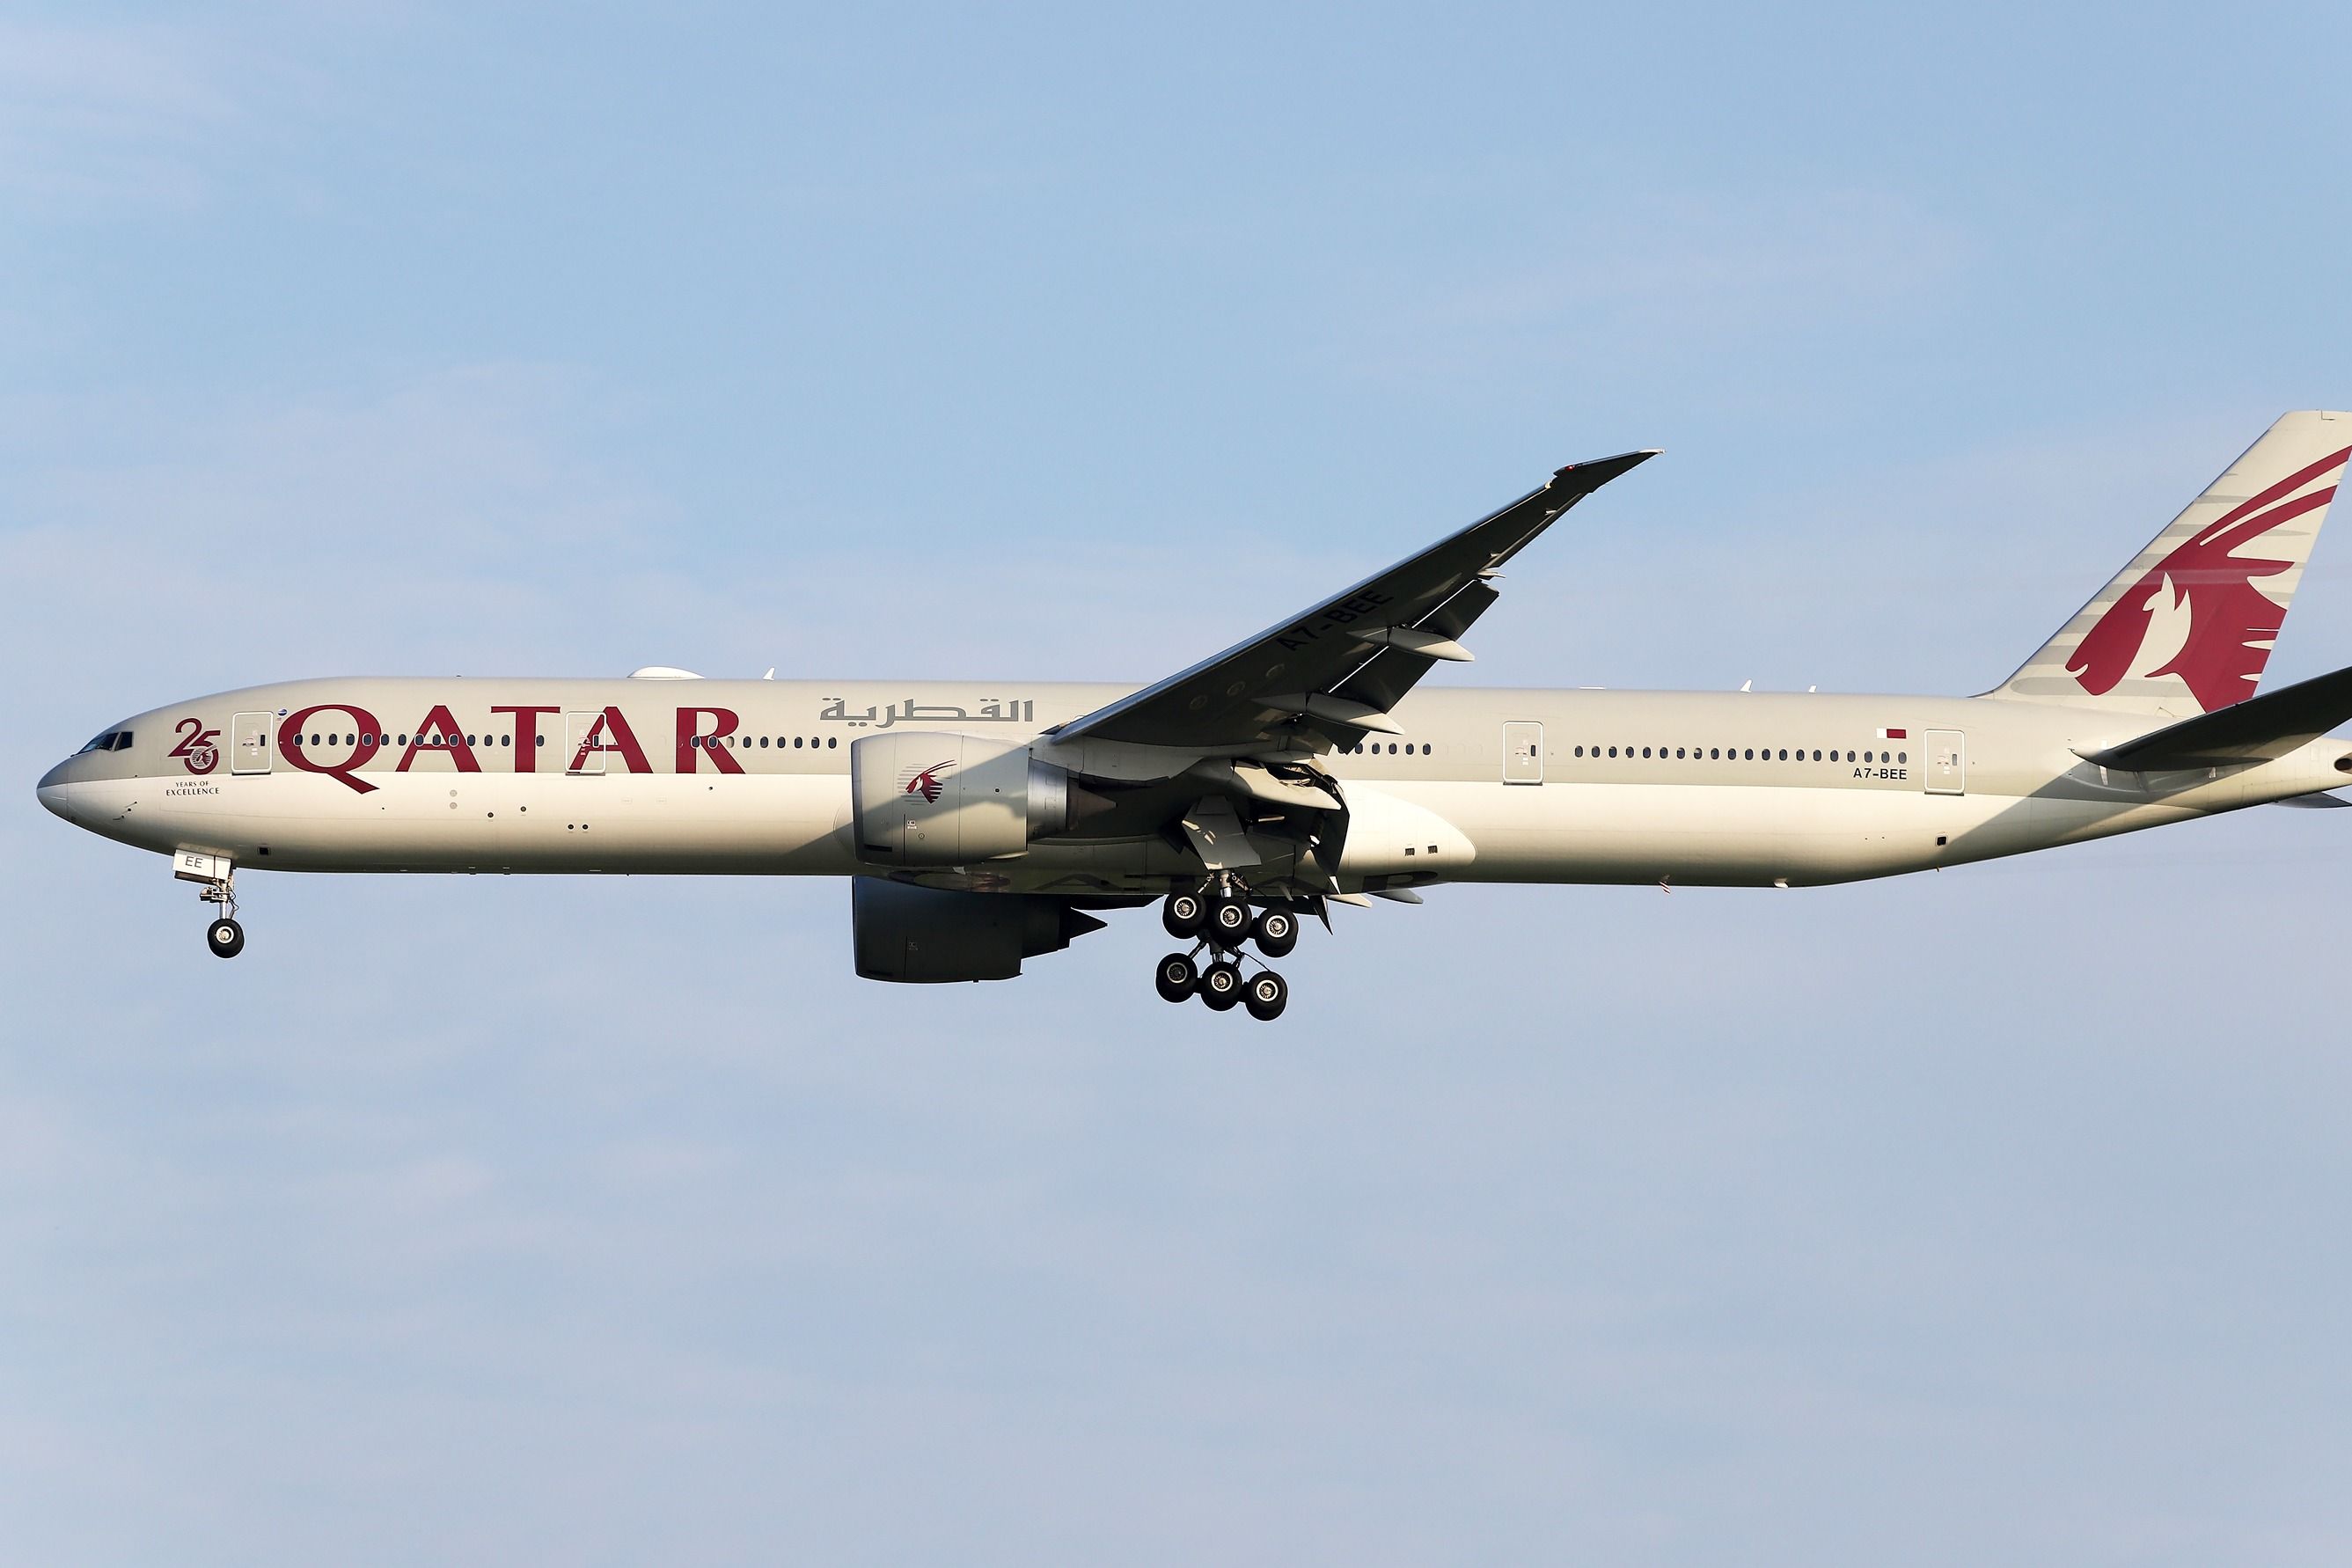 Qatar Airways Boeing 777-300ER landing shutterstock_2444678381